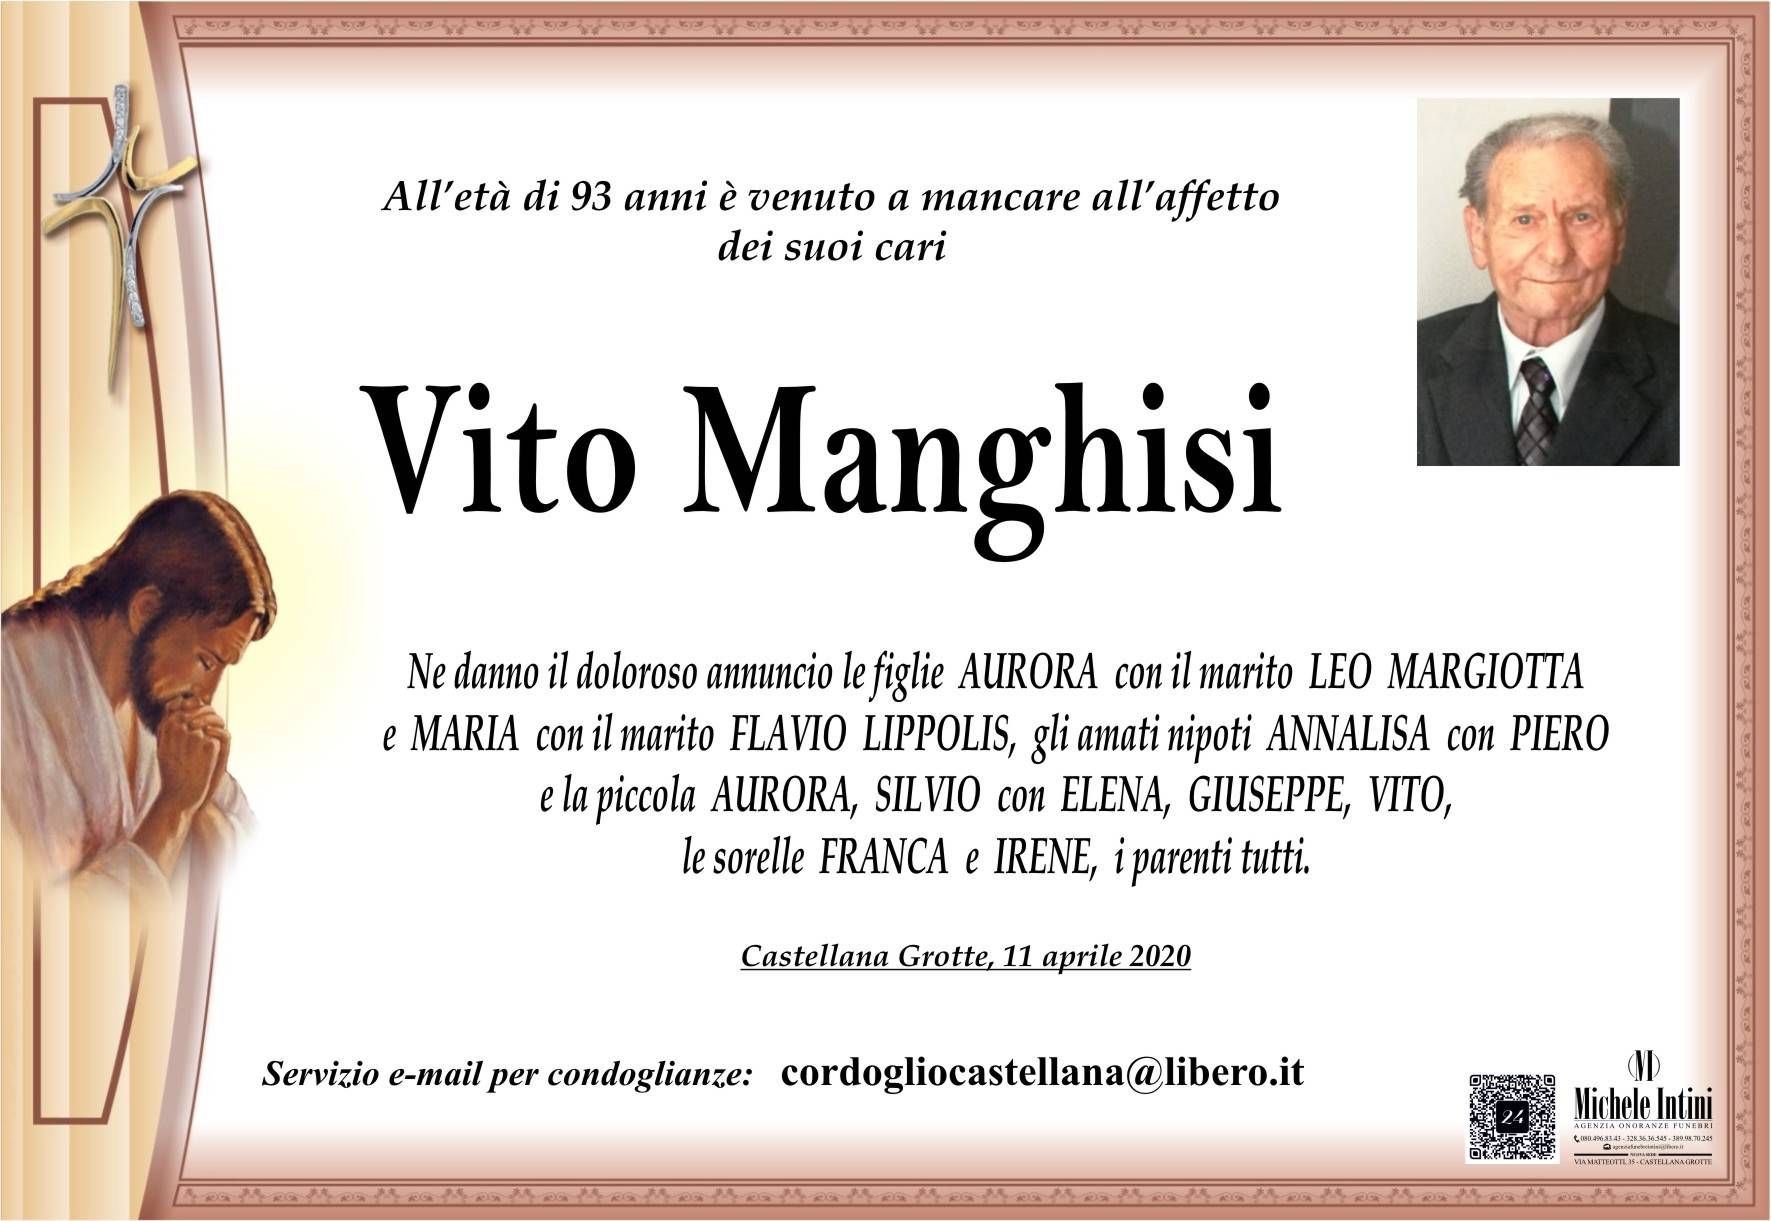 Vito Manghisi